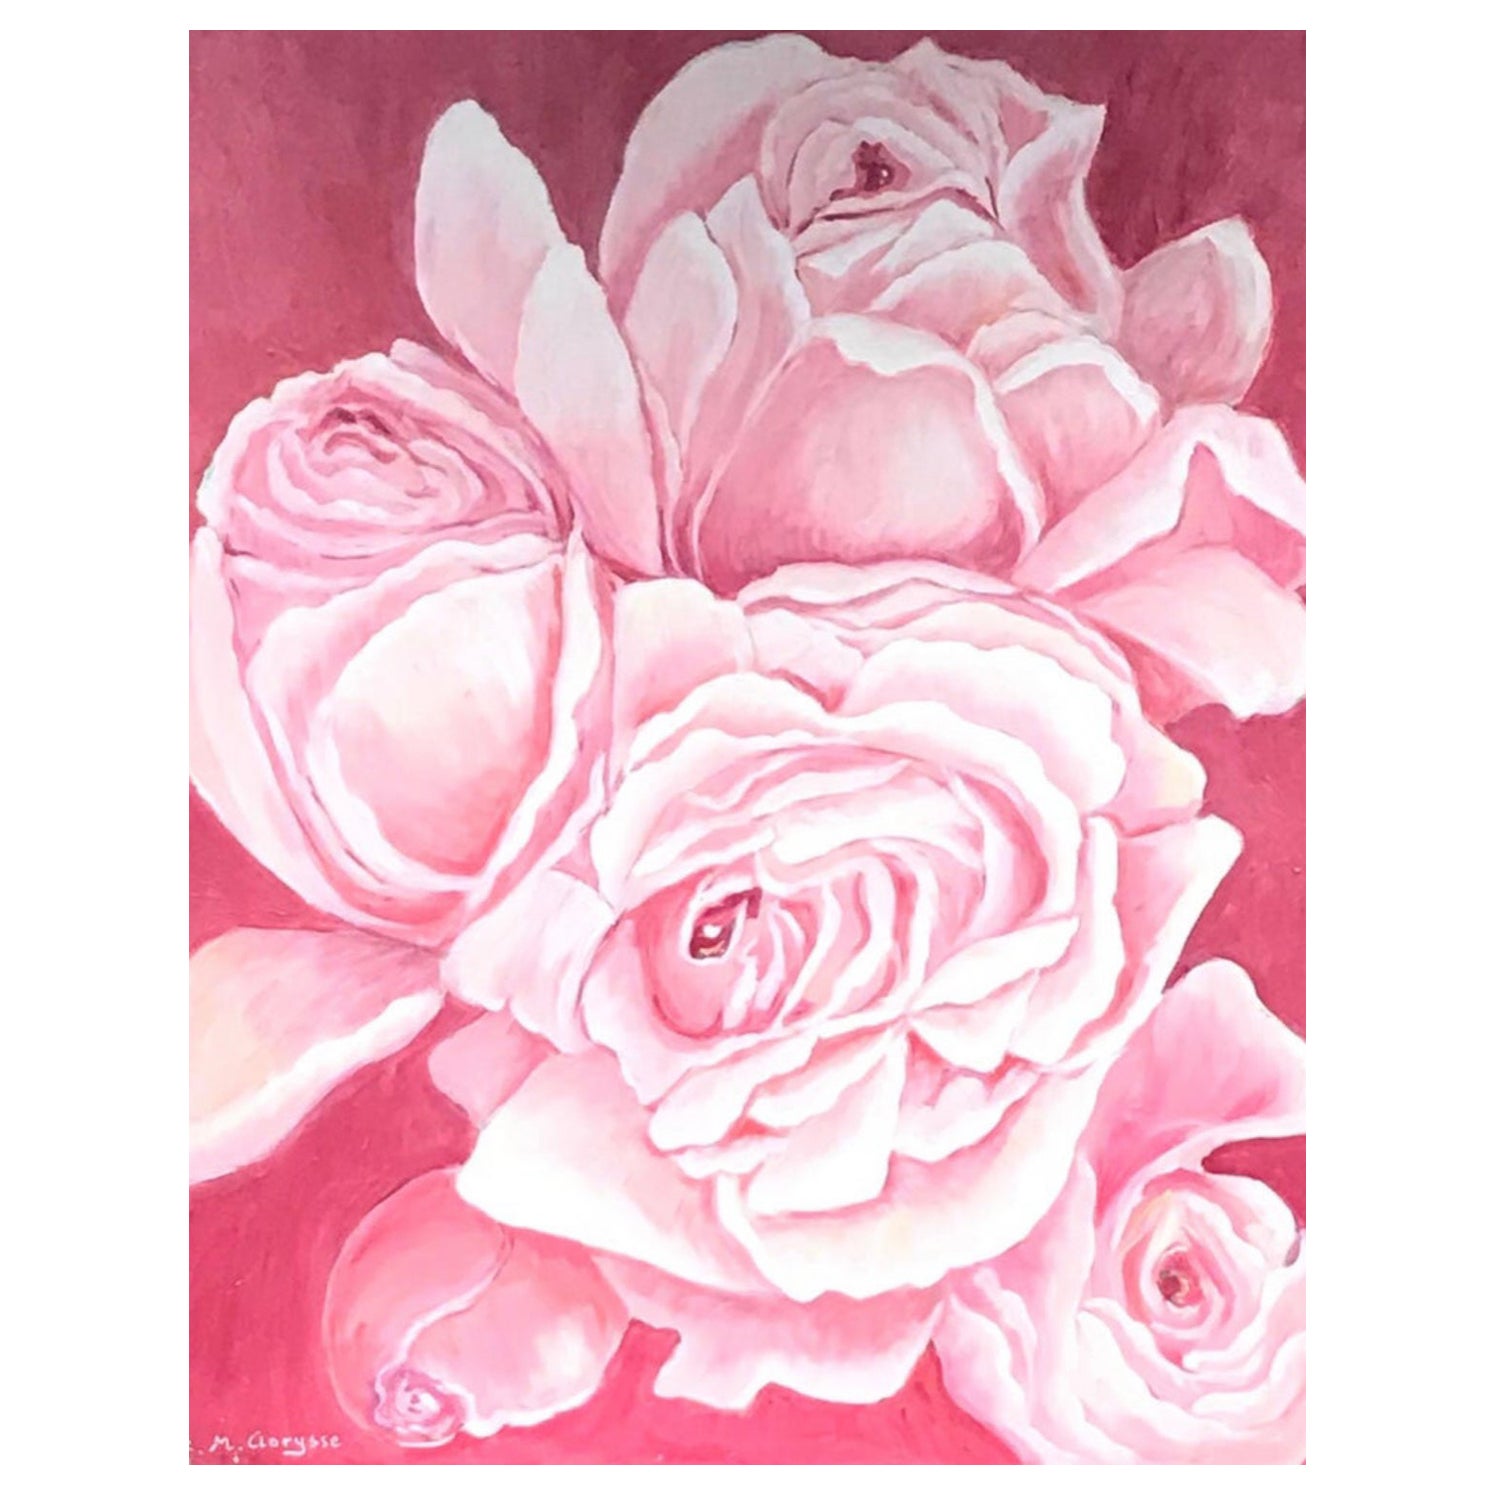 Großes helles und farbenfrohes französisches impressionistisches Ölgemälde mit rosa und weißen Rosen